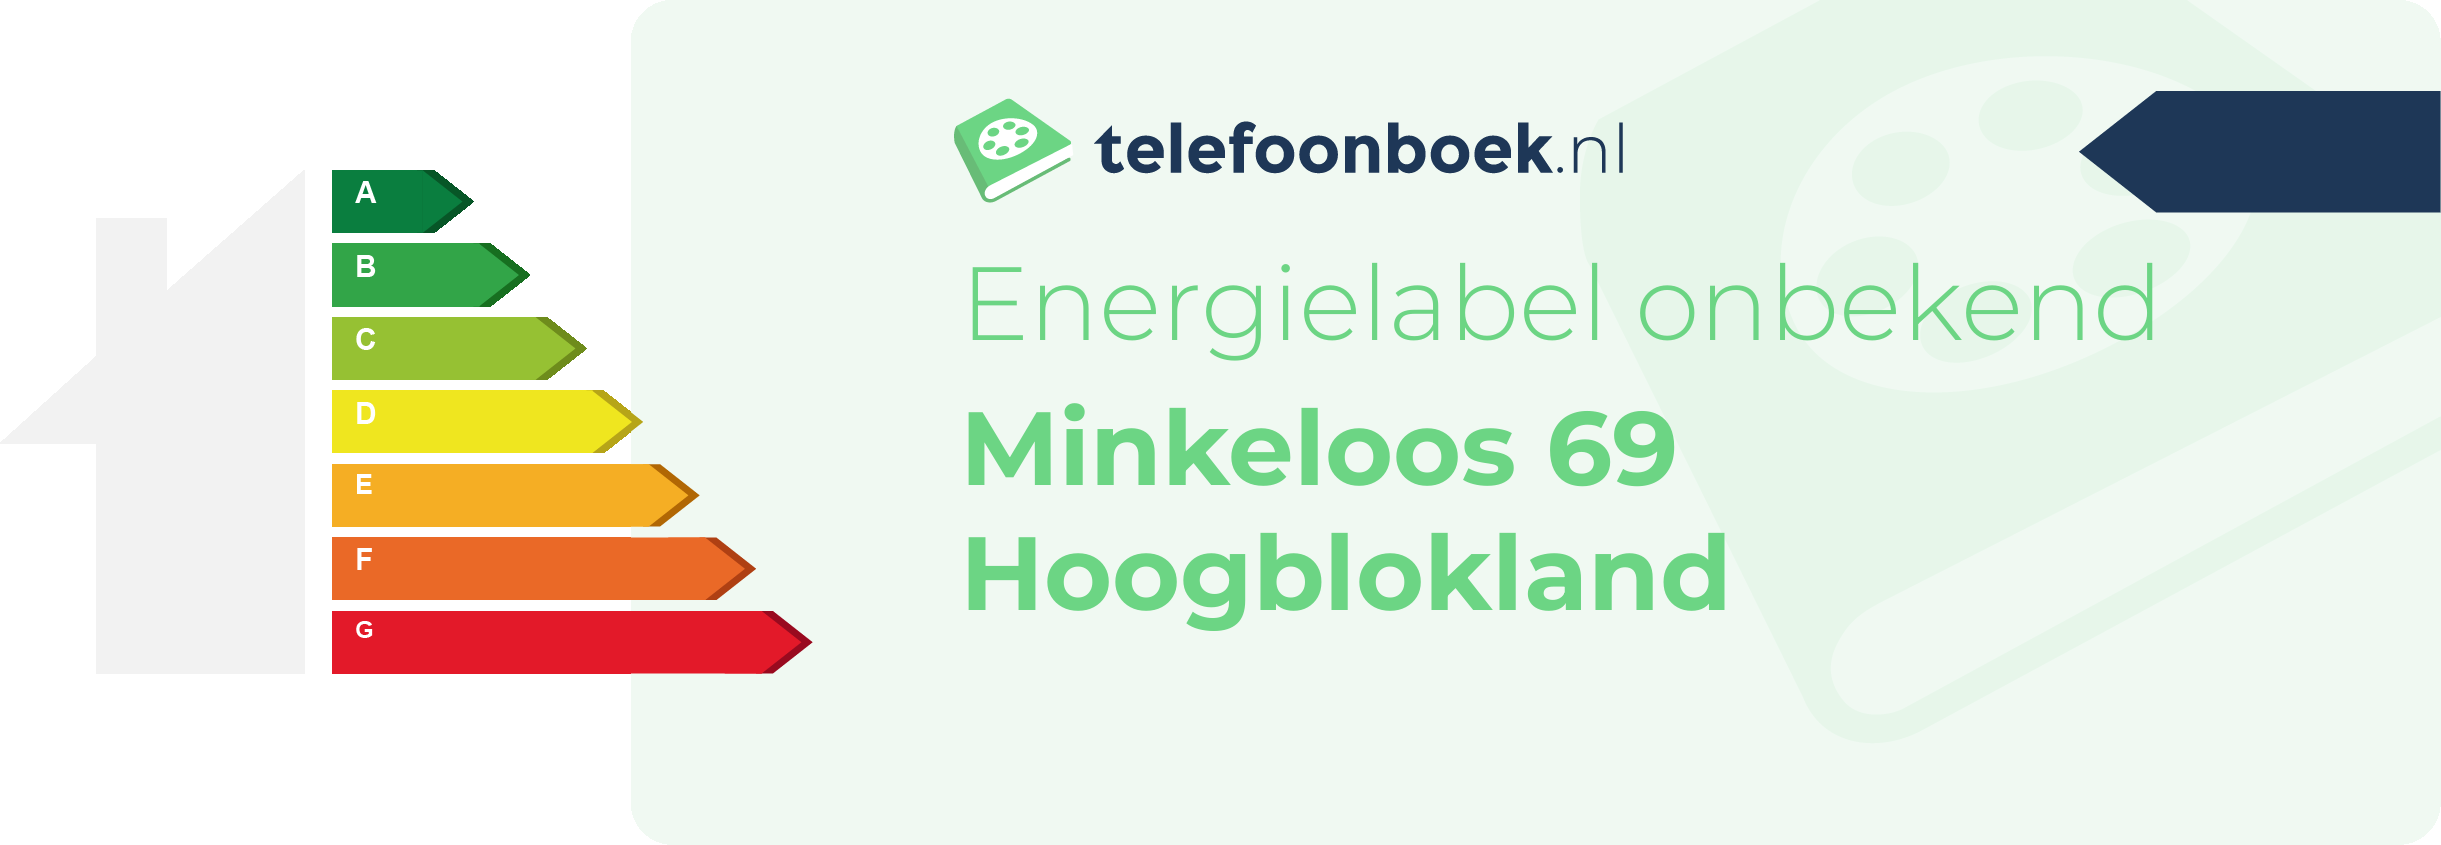 Energielabel Minkeloos 69 Hoogblokland